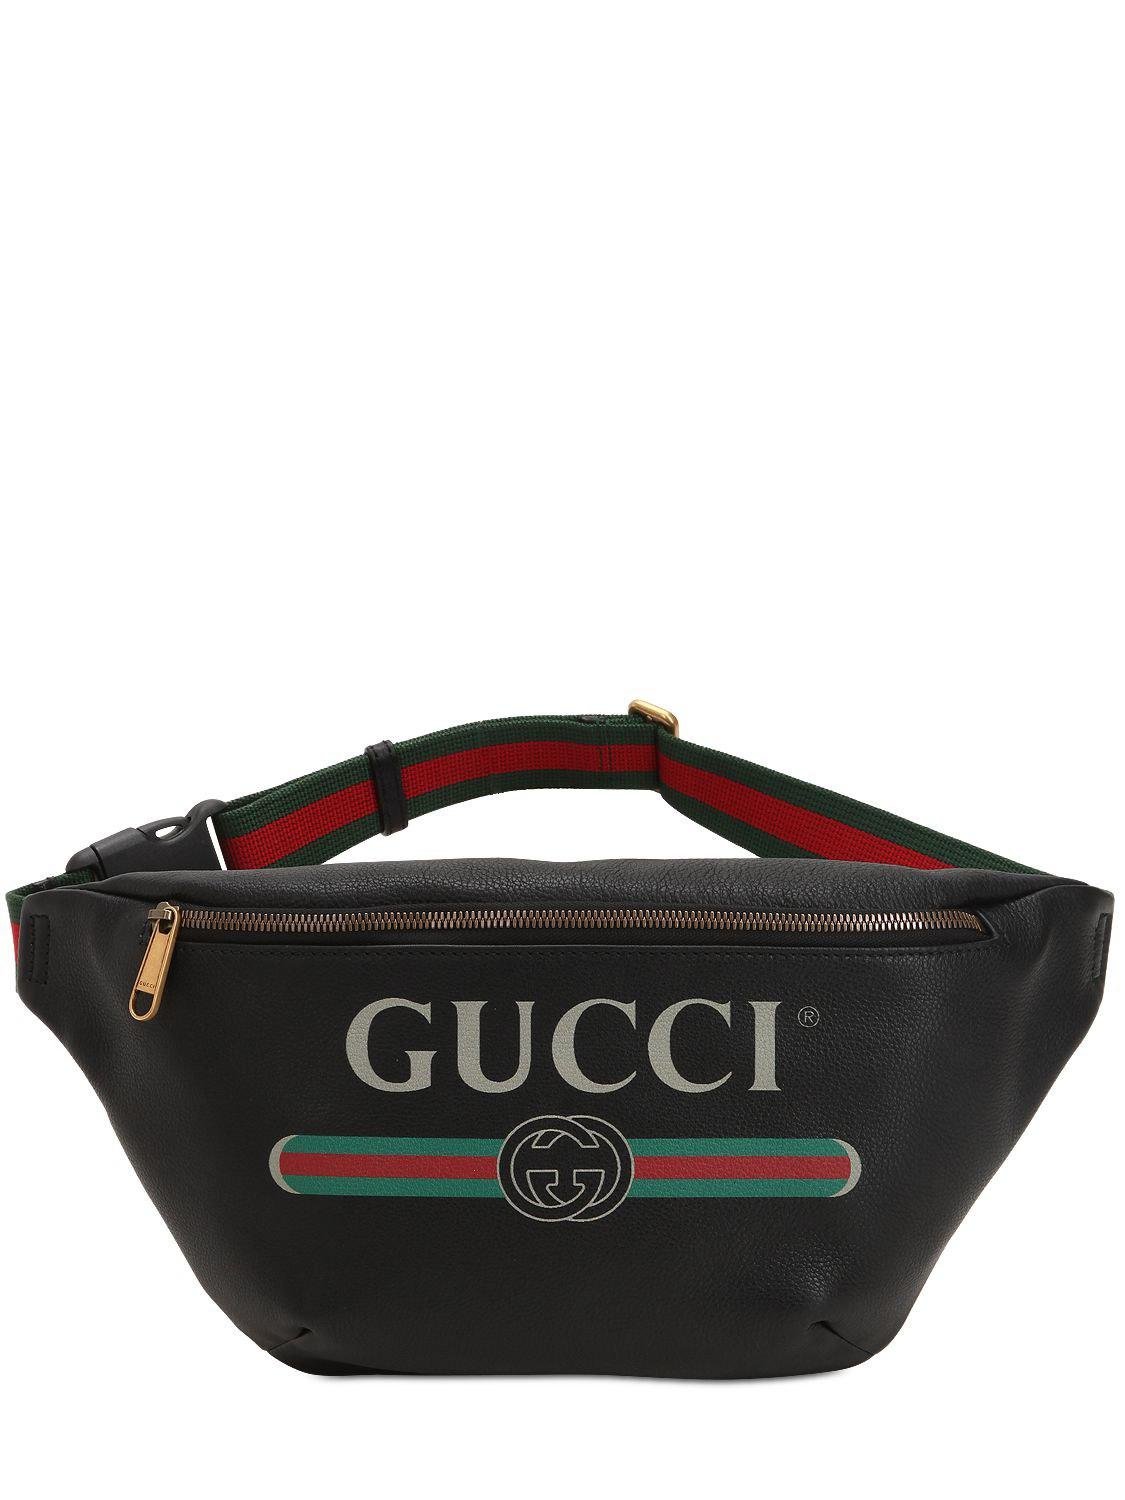 Gucci Vintage Logo Printed Leather Belt Pack in Black for Men